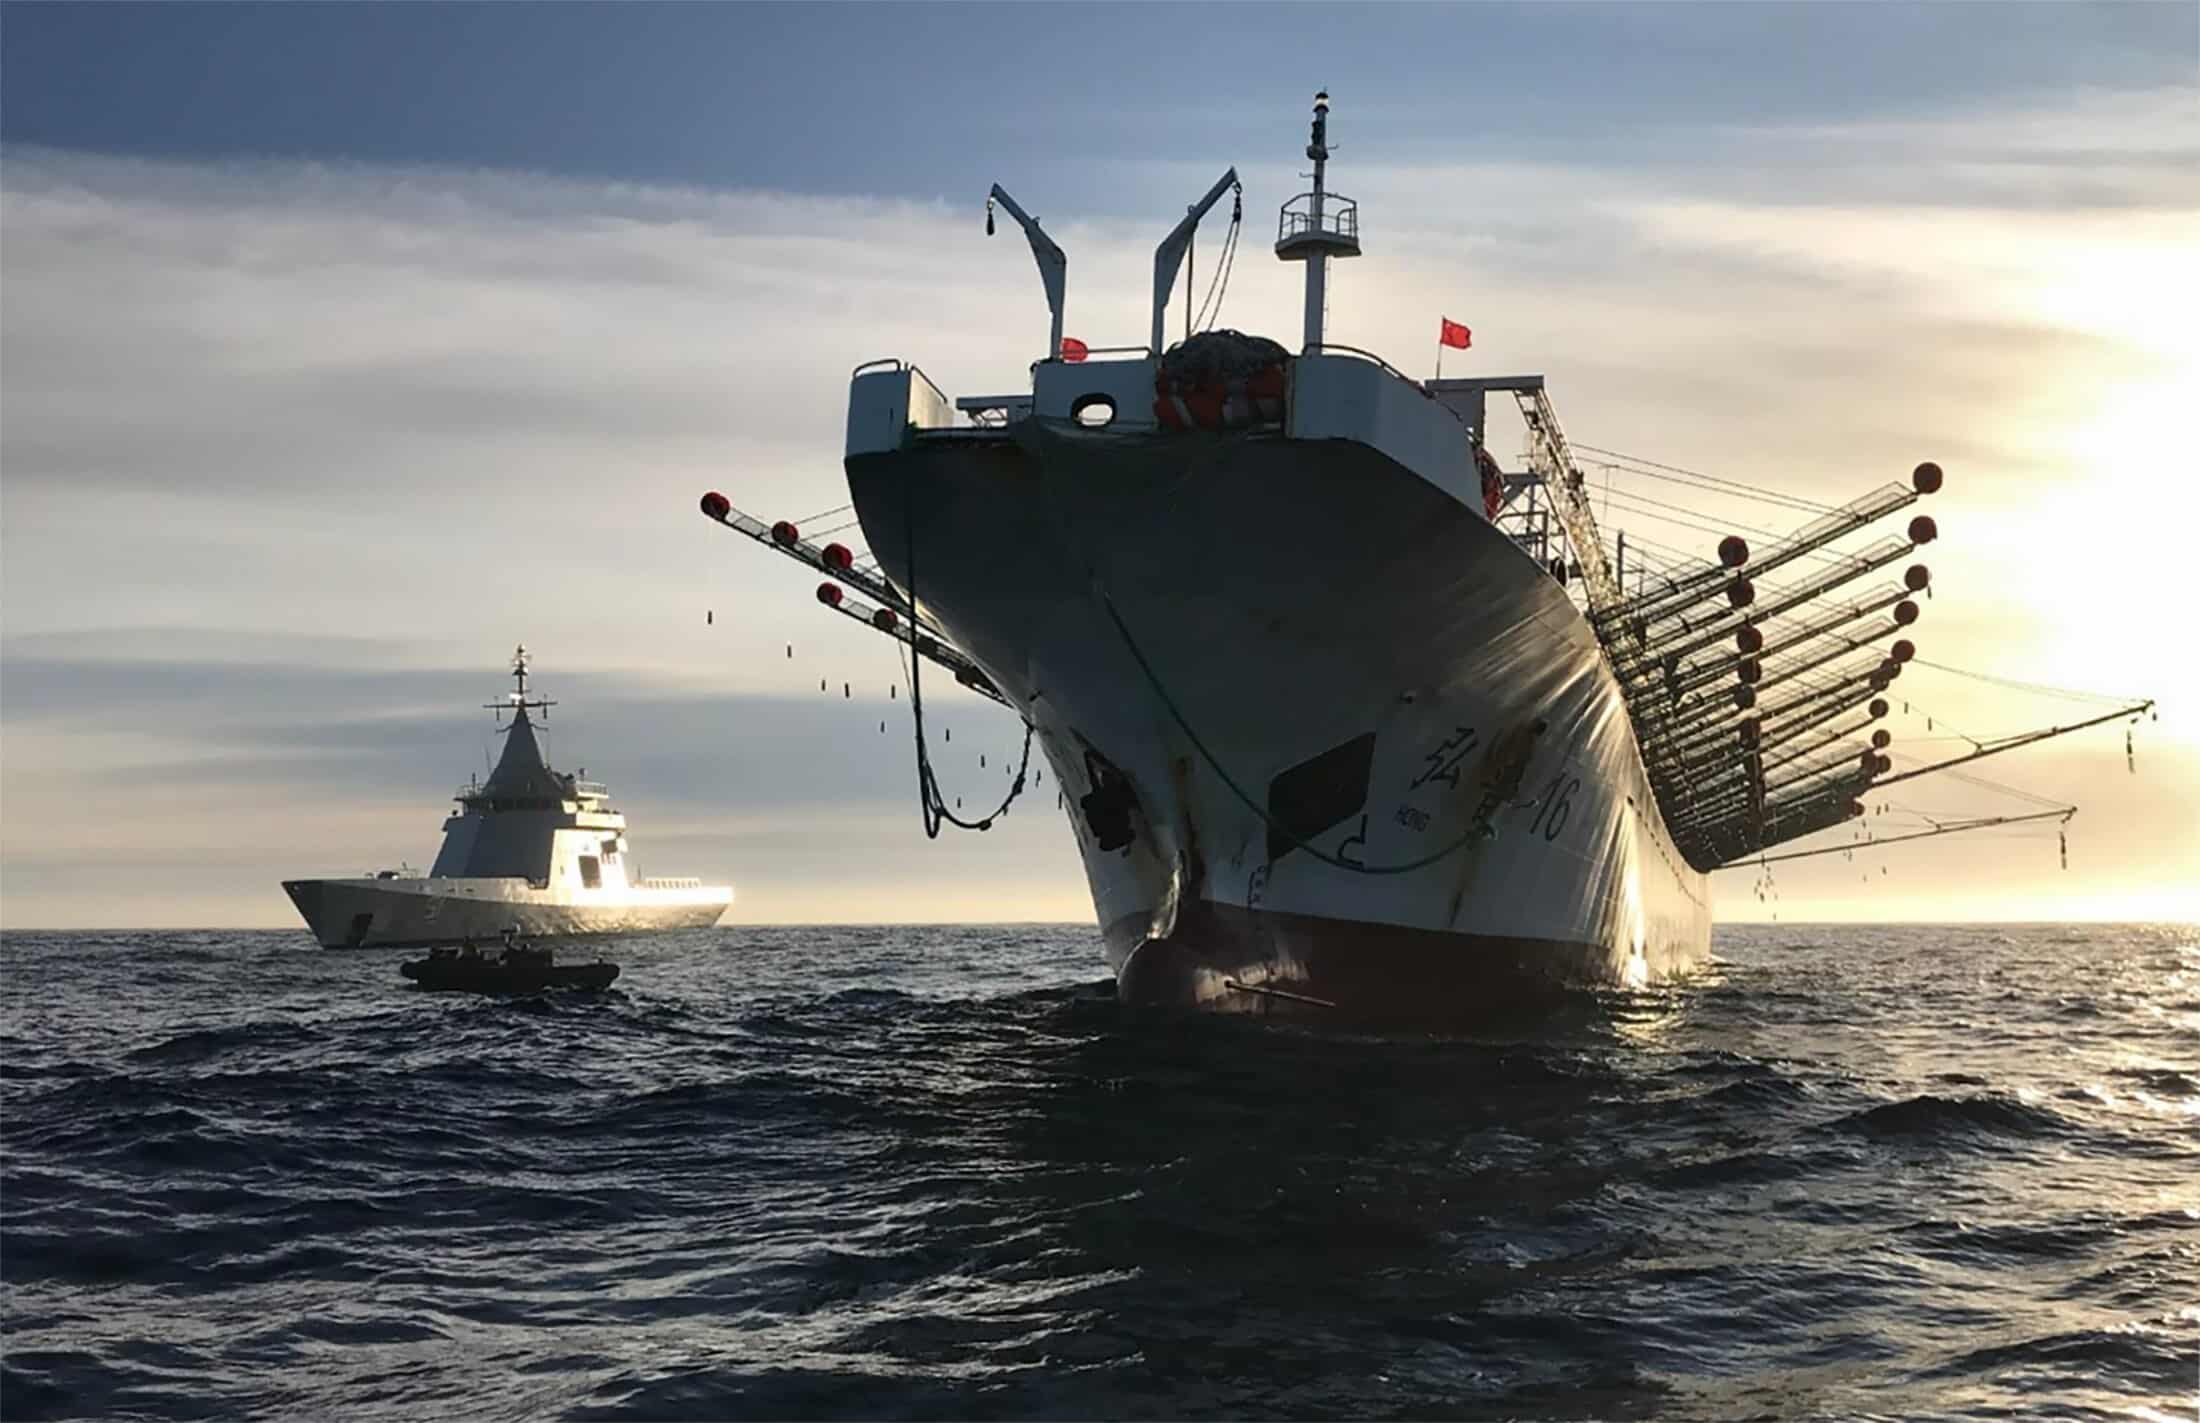 Chiński statek złapany w Argentynie na nielegalnym połowie divers24.pl